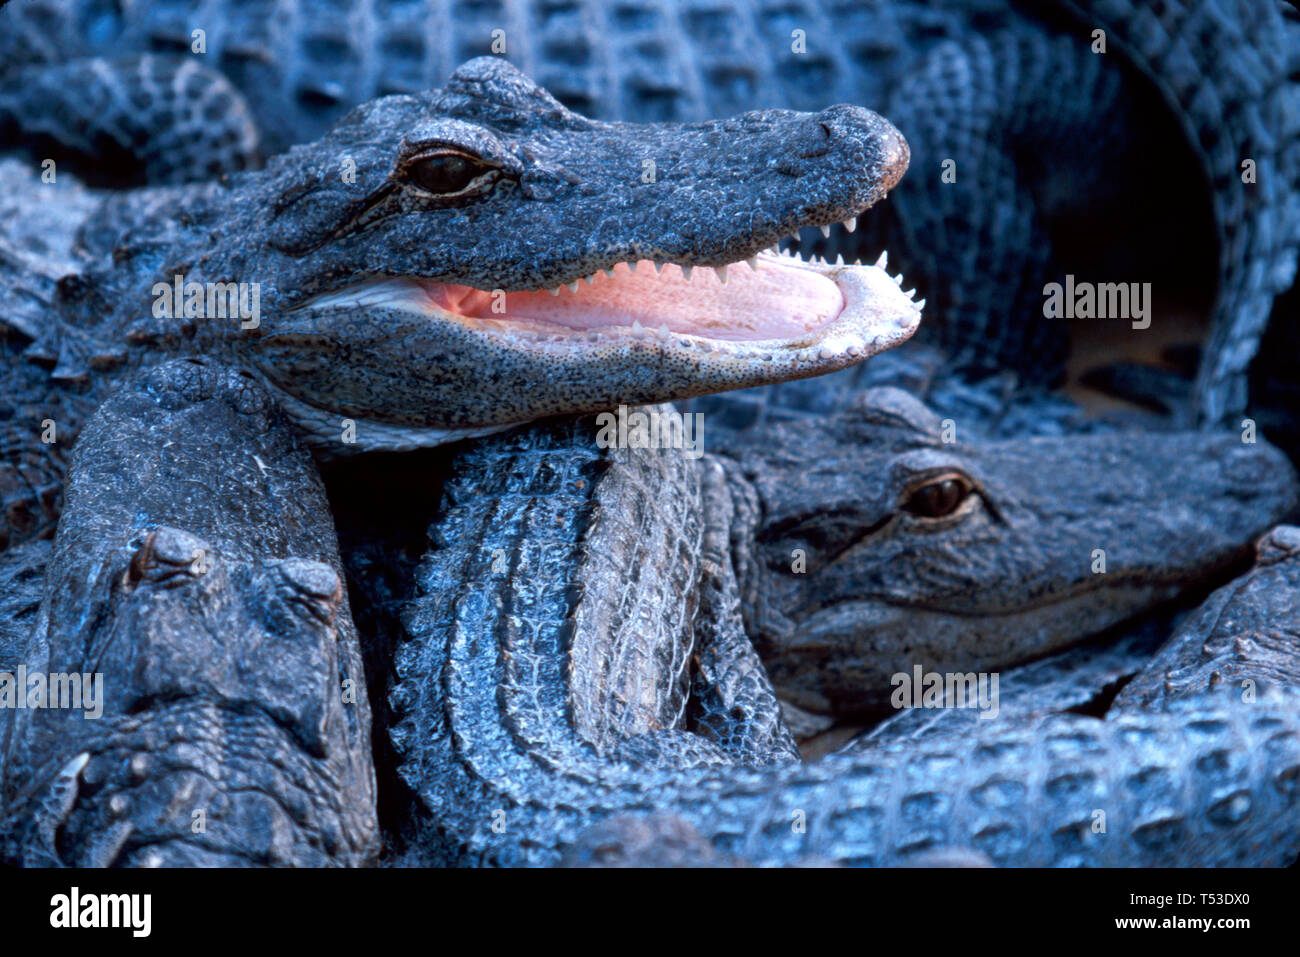 Miami Florida, Homestead Everglades Alligator Farm 3 anni giovani, crescere penna attrazione turistica, Foto Stock